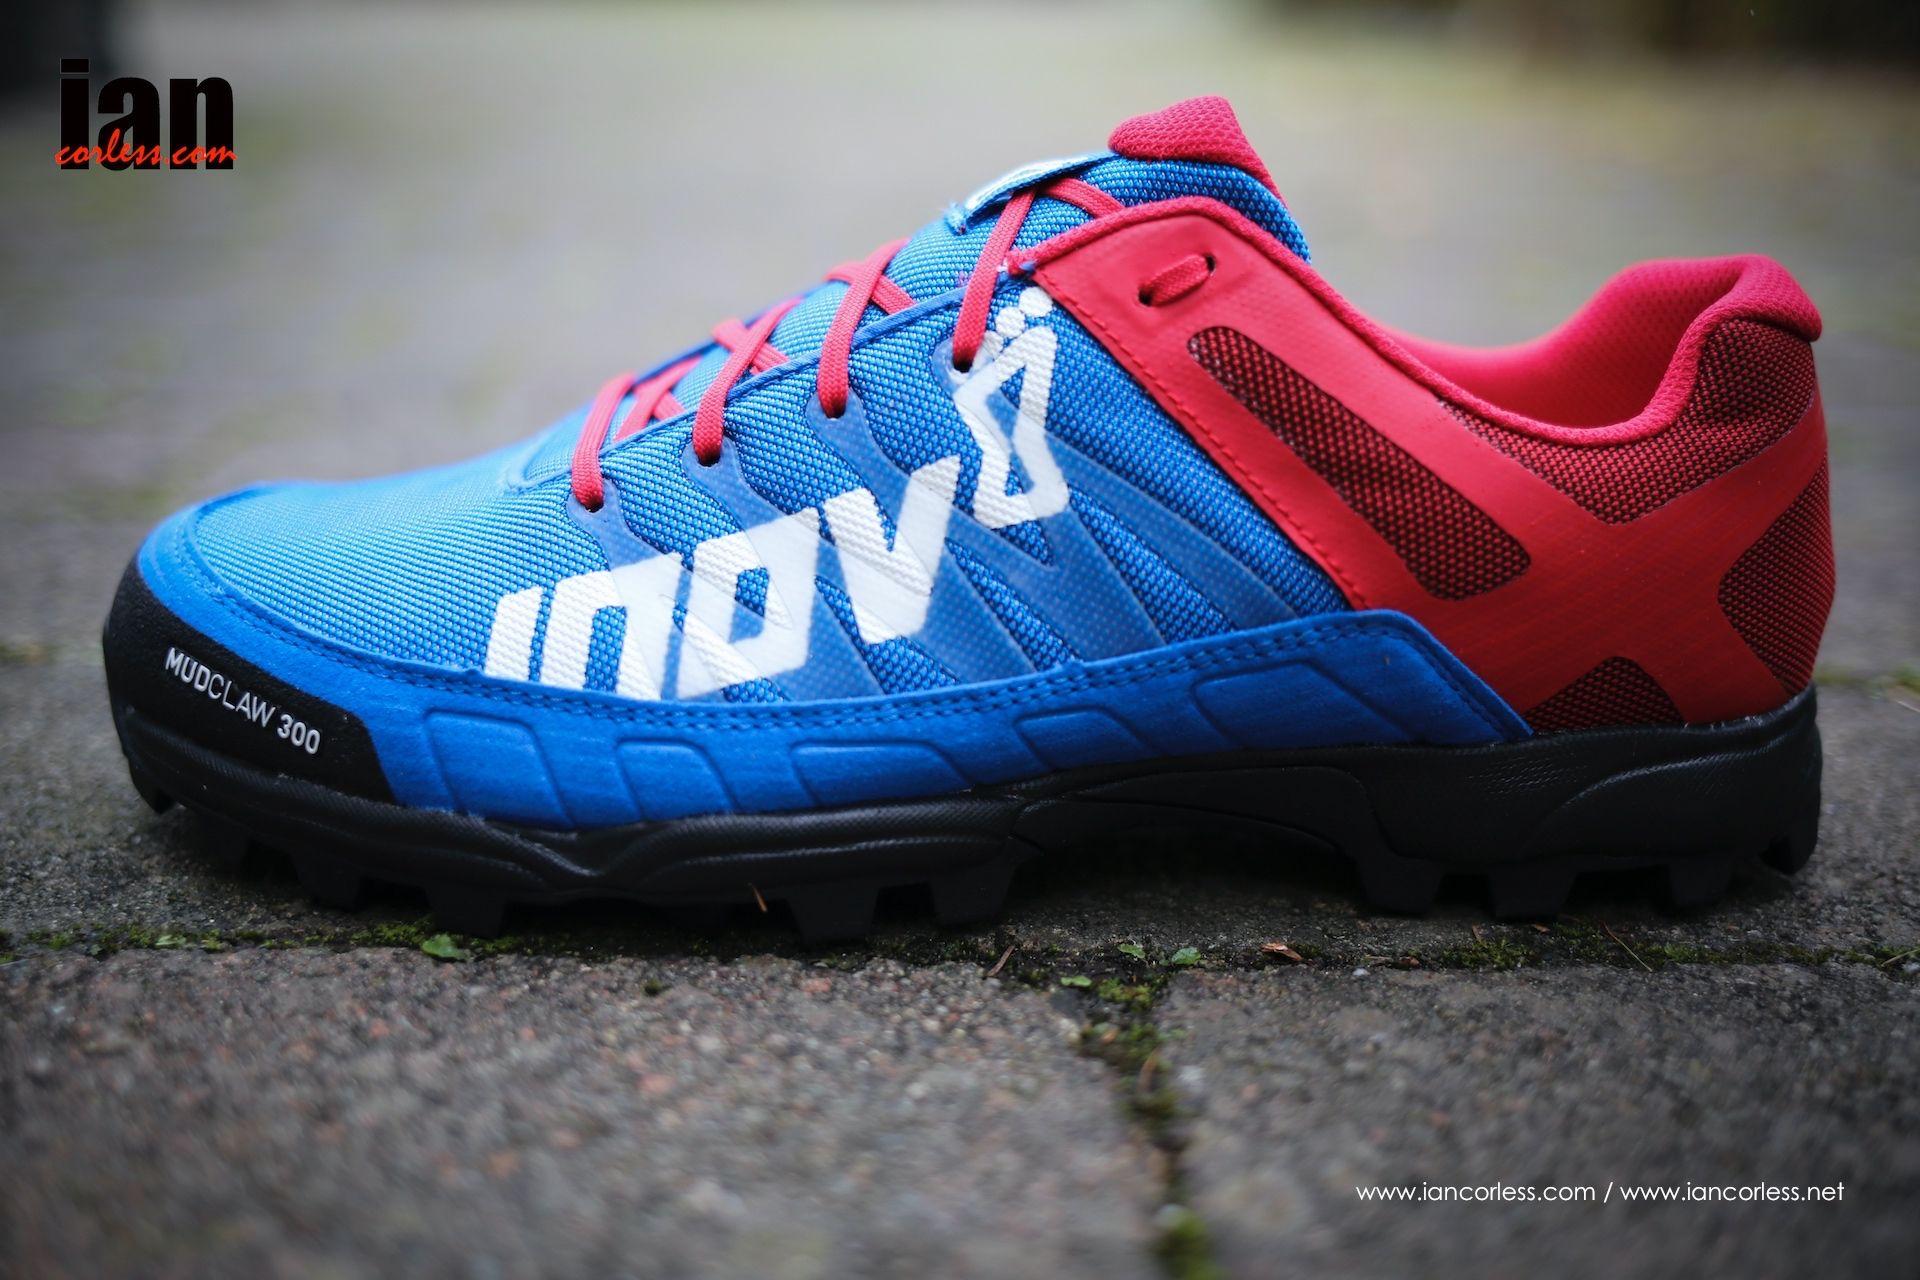 Inov-8 Logo - inov-8 MUDCLAW 300 Shoe Review | iancorless.com – Photography ...